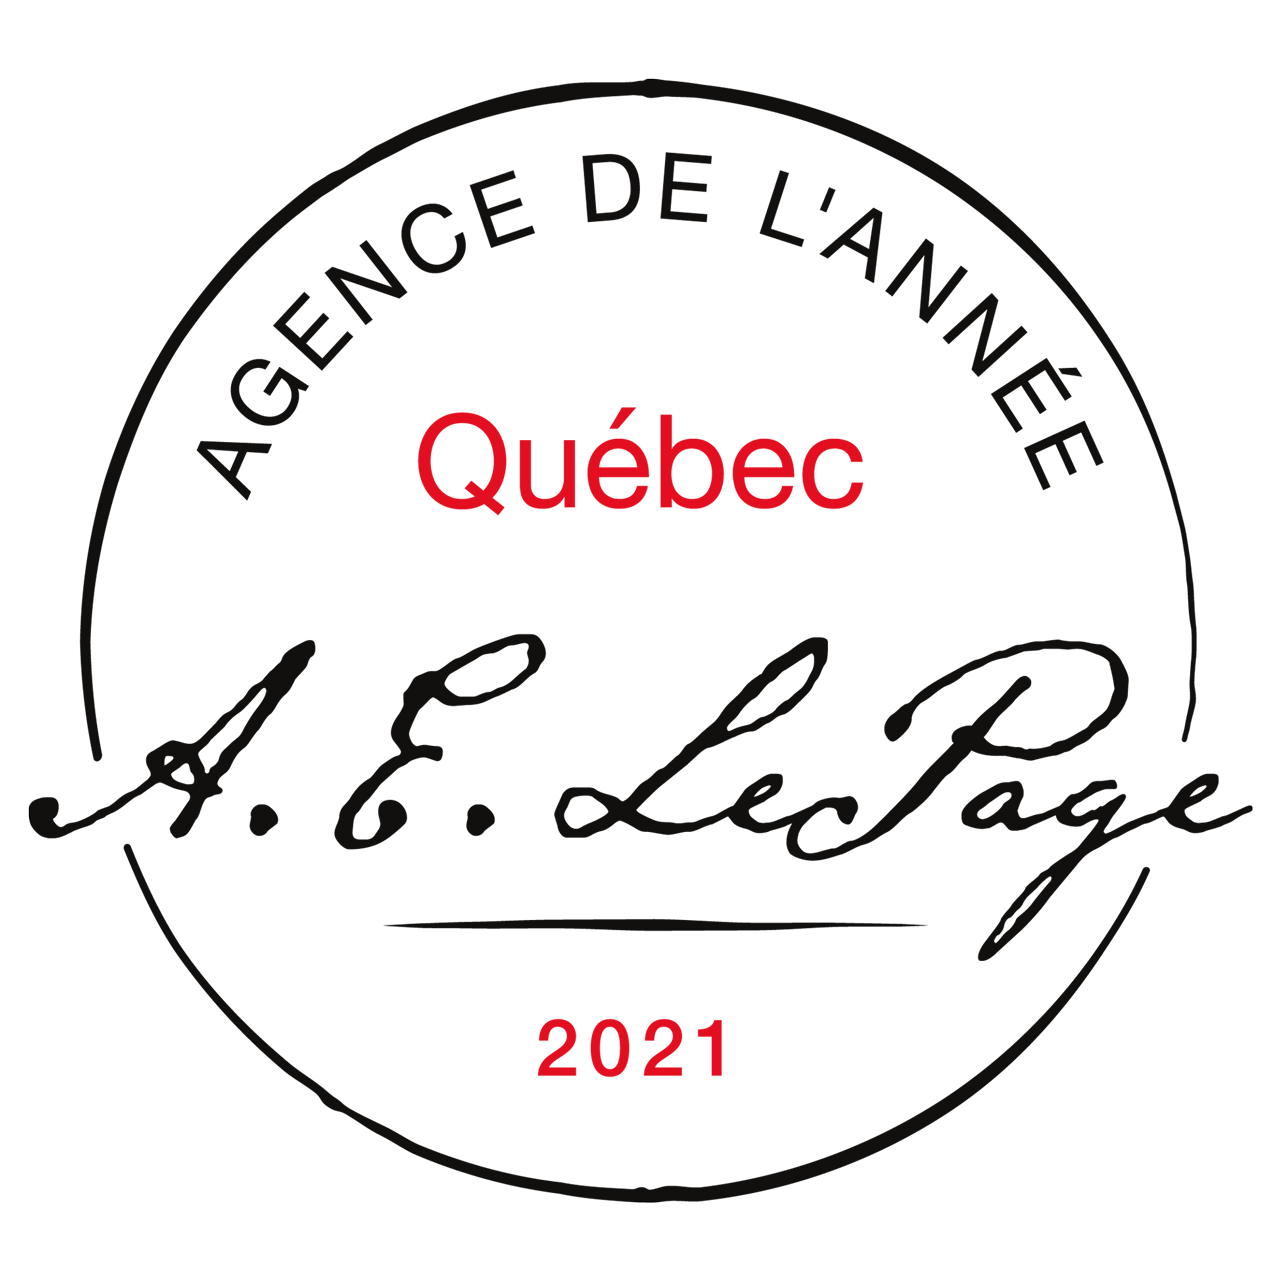 Prix Royale Lepage, Agence de l'année 2021 au Québec